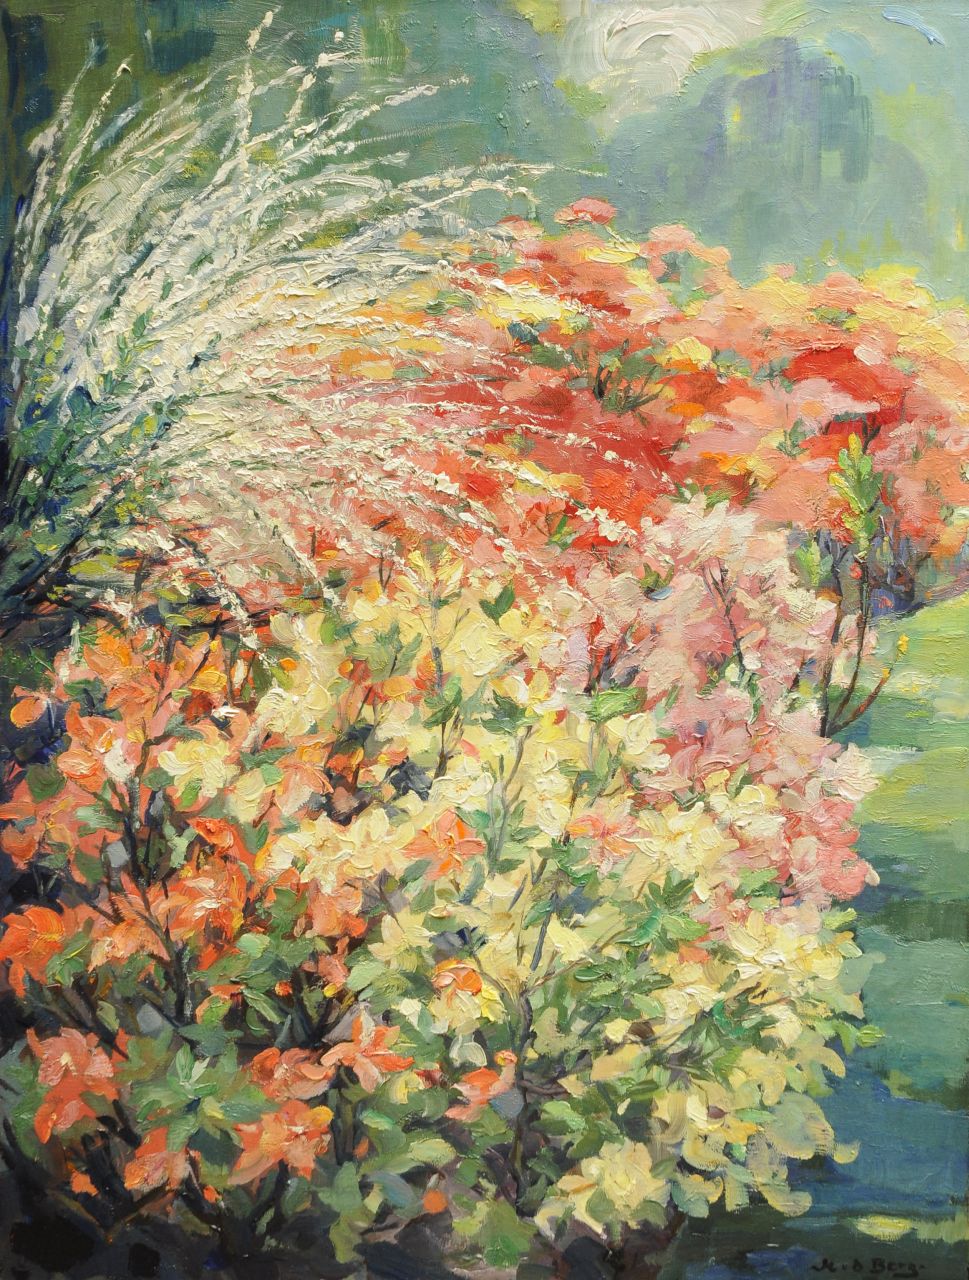 Berg M. van den | Mijndert van den Berg, Azalea in bloom, oil on canvas 80.3 x 61.2 cm, signed l.r.